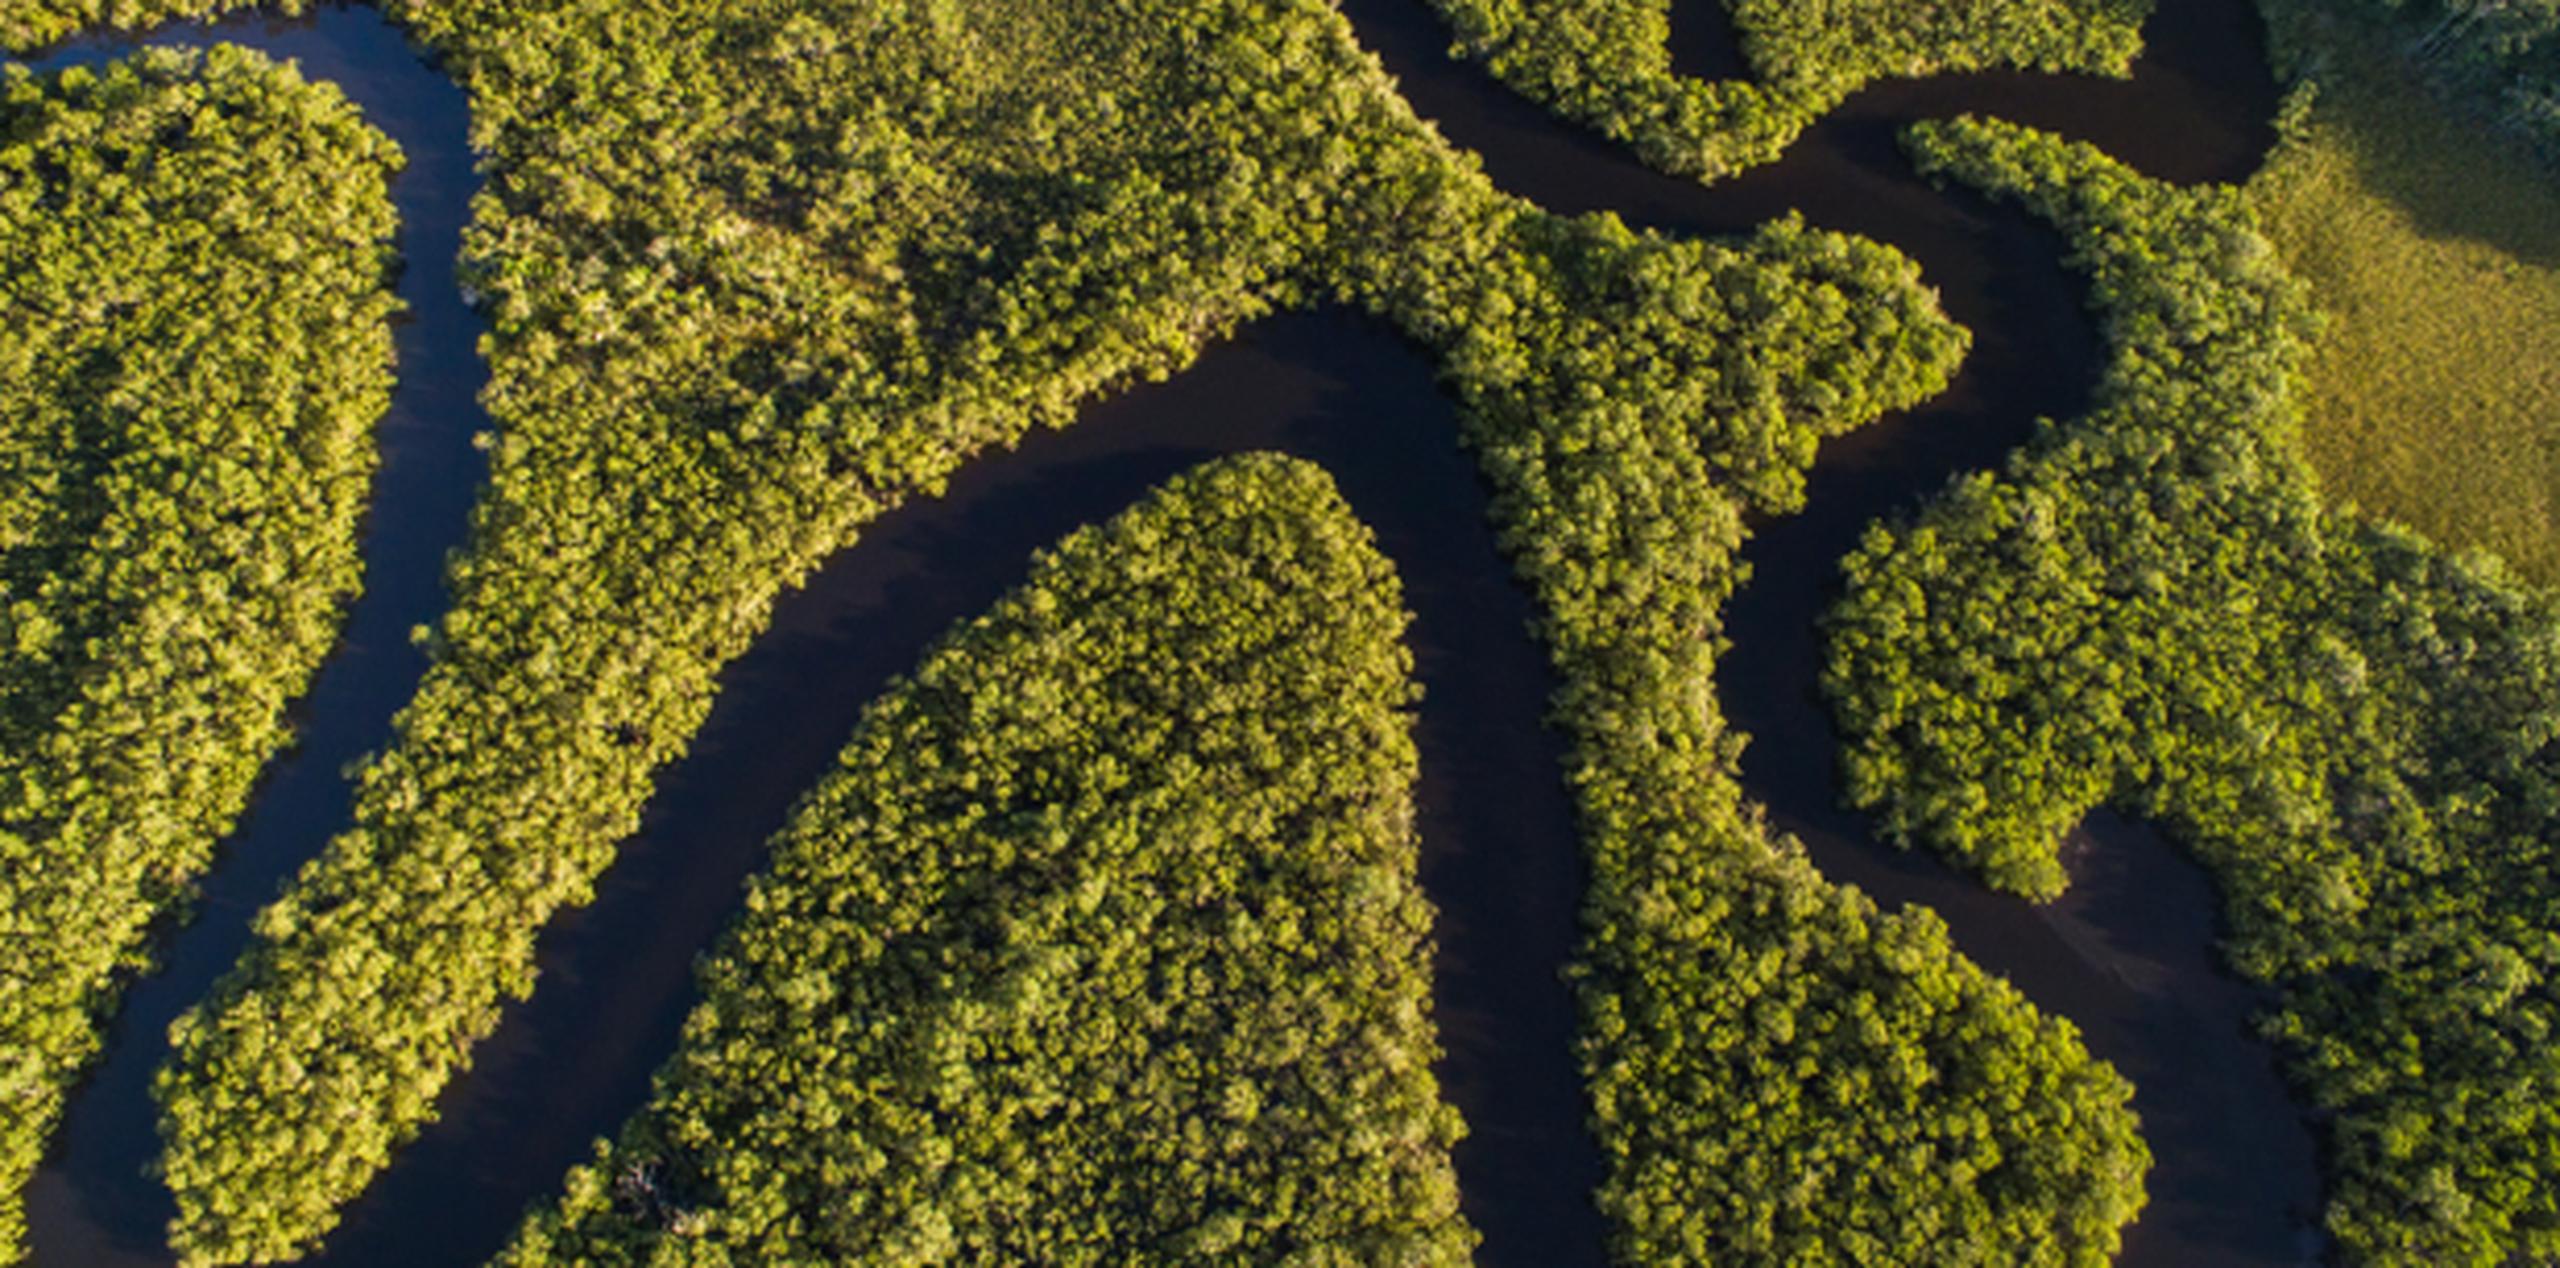 Para entender las biodiversidad del Amazonas es importante tener en cuenta estos episodios de inundación por el mar, asegura el estudio científico. (Shutterstock)